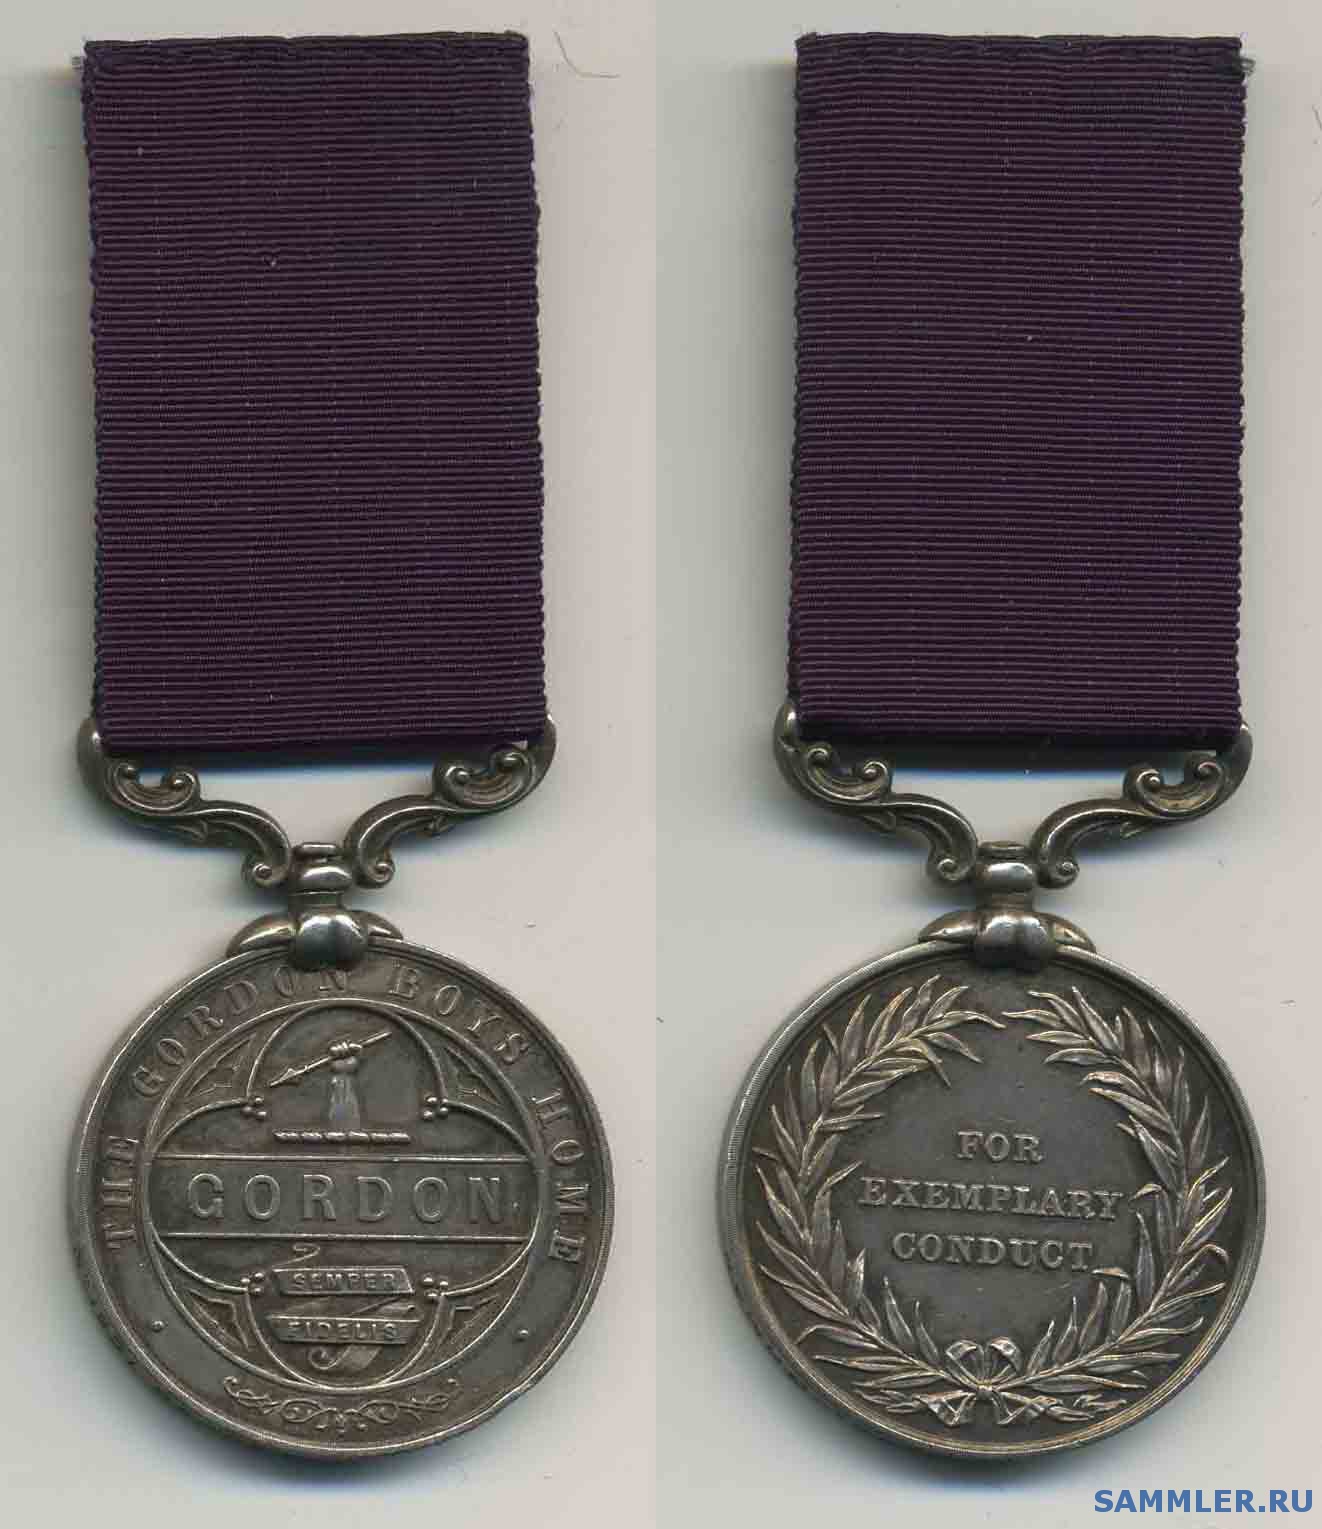 Gordon_Boys_Home_Medal.jpg